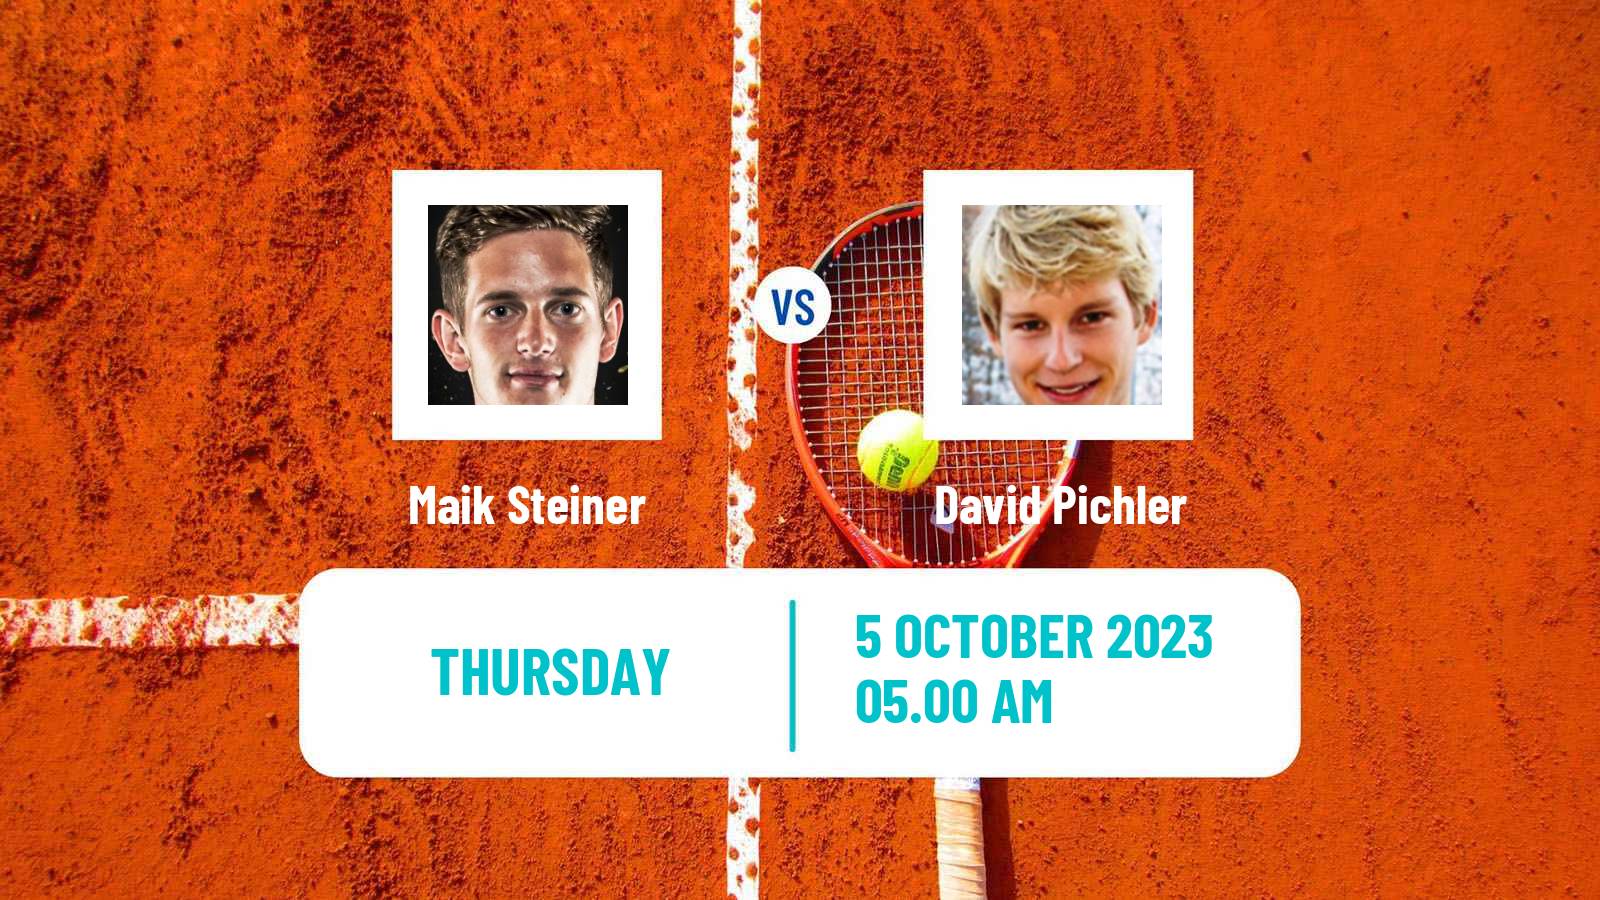 Tennis ITF M15 Bad Waltersdorf Men Maik Steiner - David Pichler